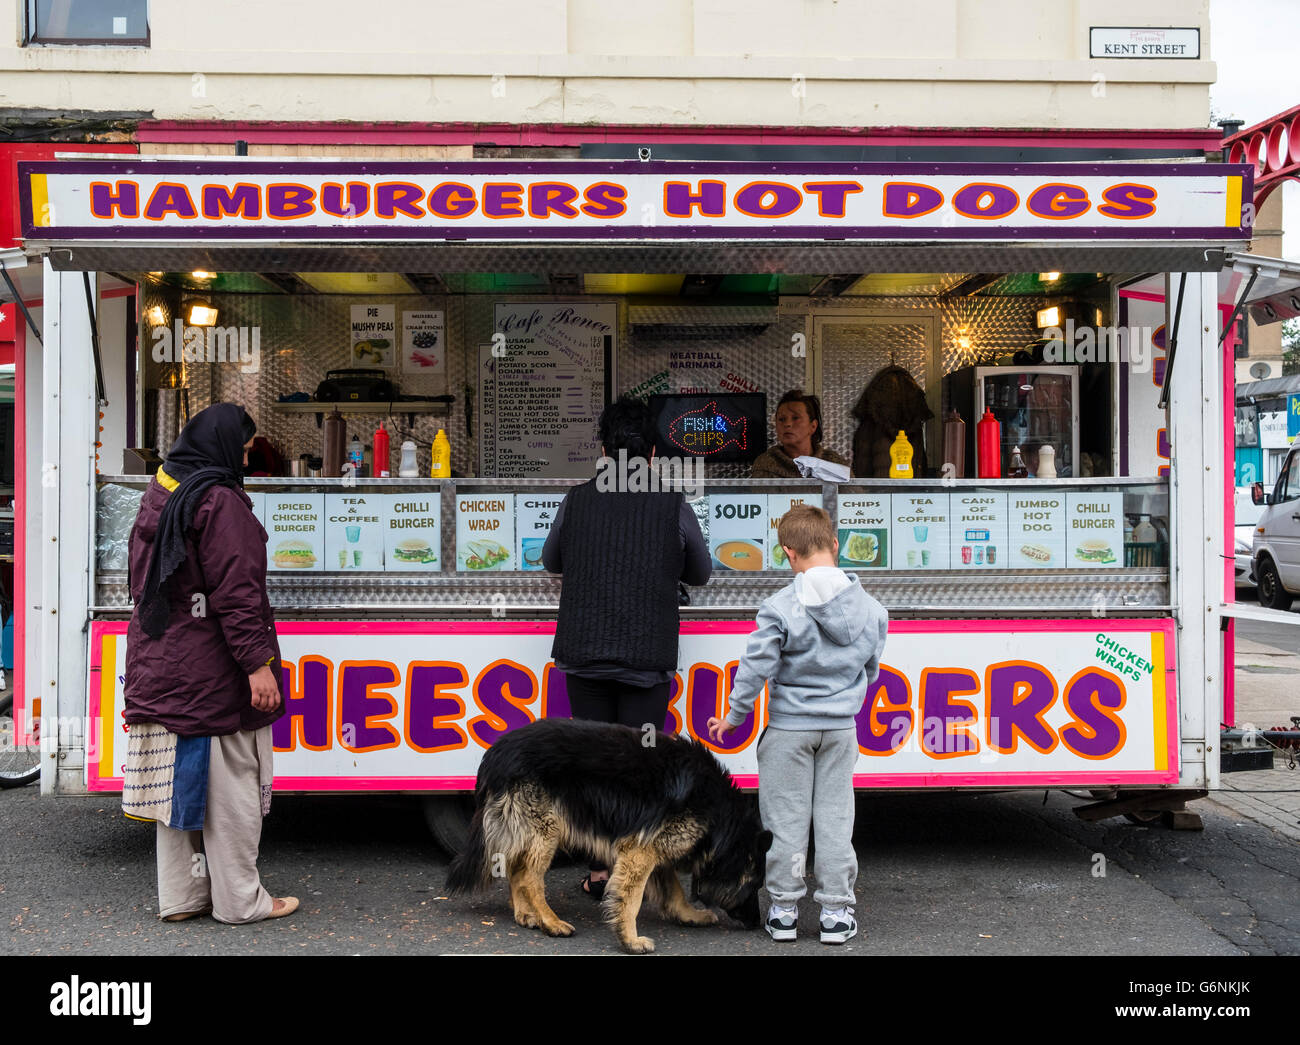 Fast-Food Burger van verkaufen billige Snacks an Barras Markt in Gallowgate Glasgow, Vereinigtes Königreich Stockfoto